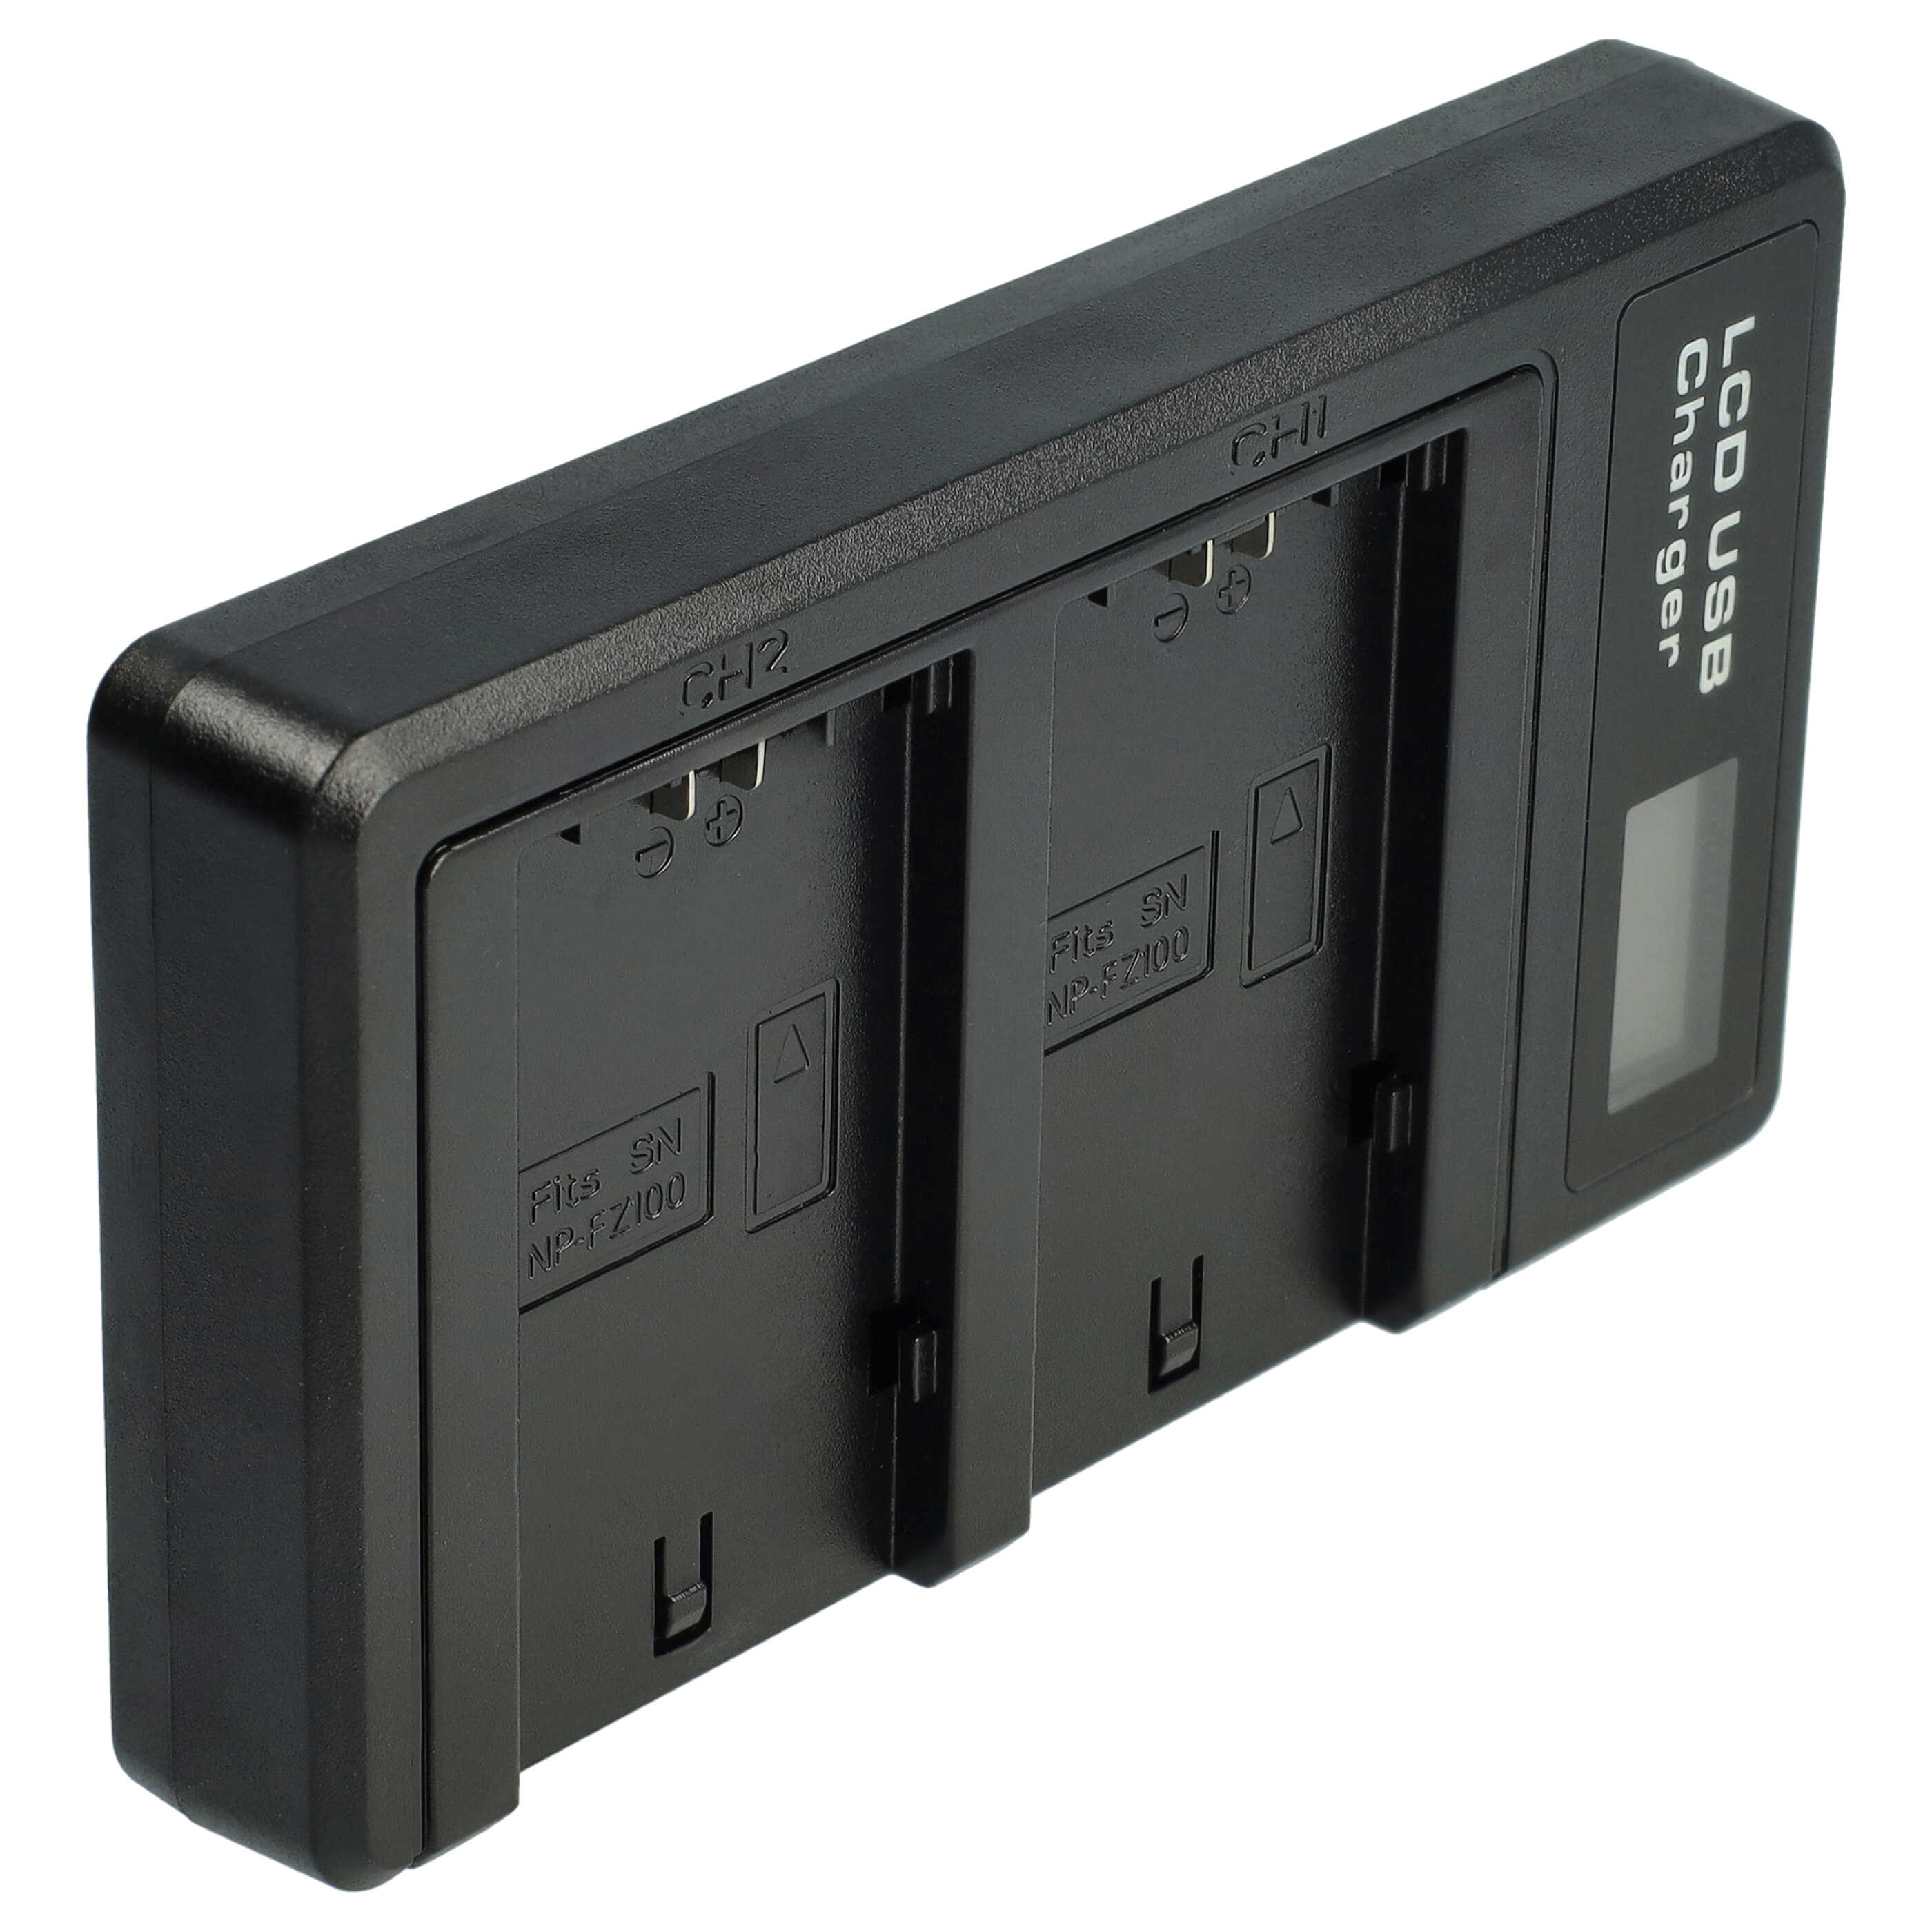 Ładowarka do aparatu Sony NP-FZ100 i innych - ładowarka akumulatora 0,5 A, 8,4 V